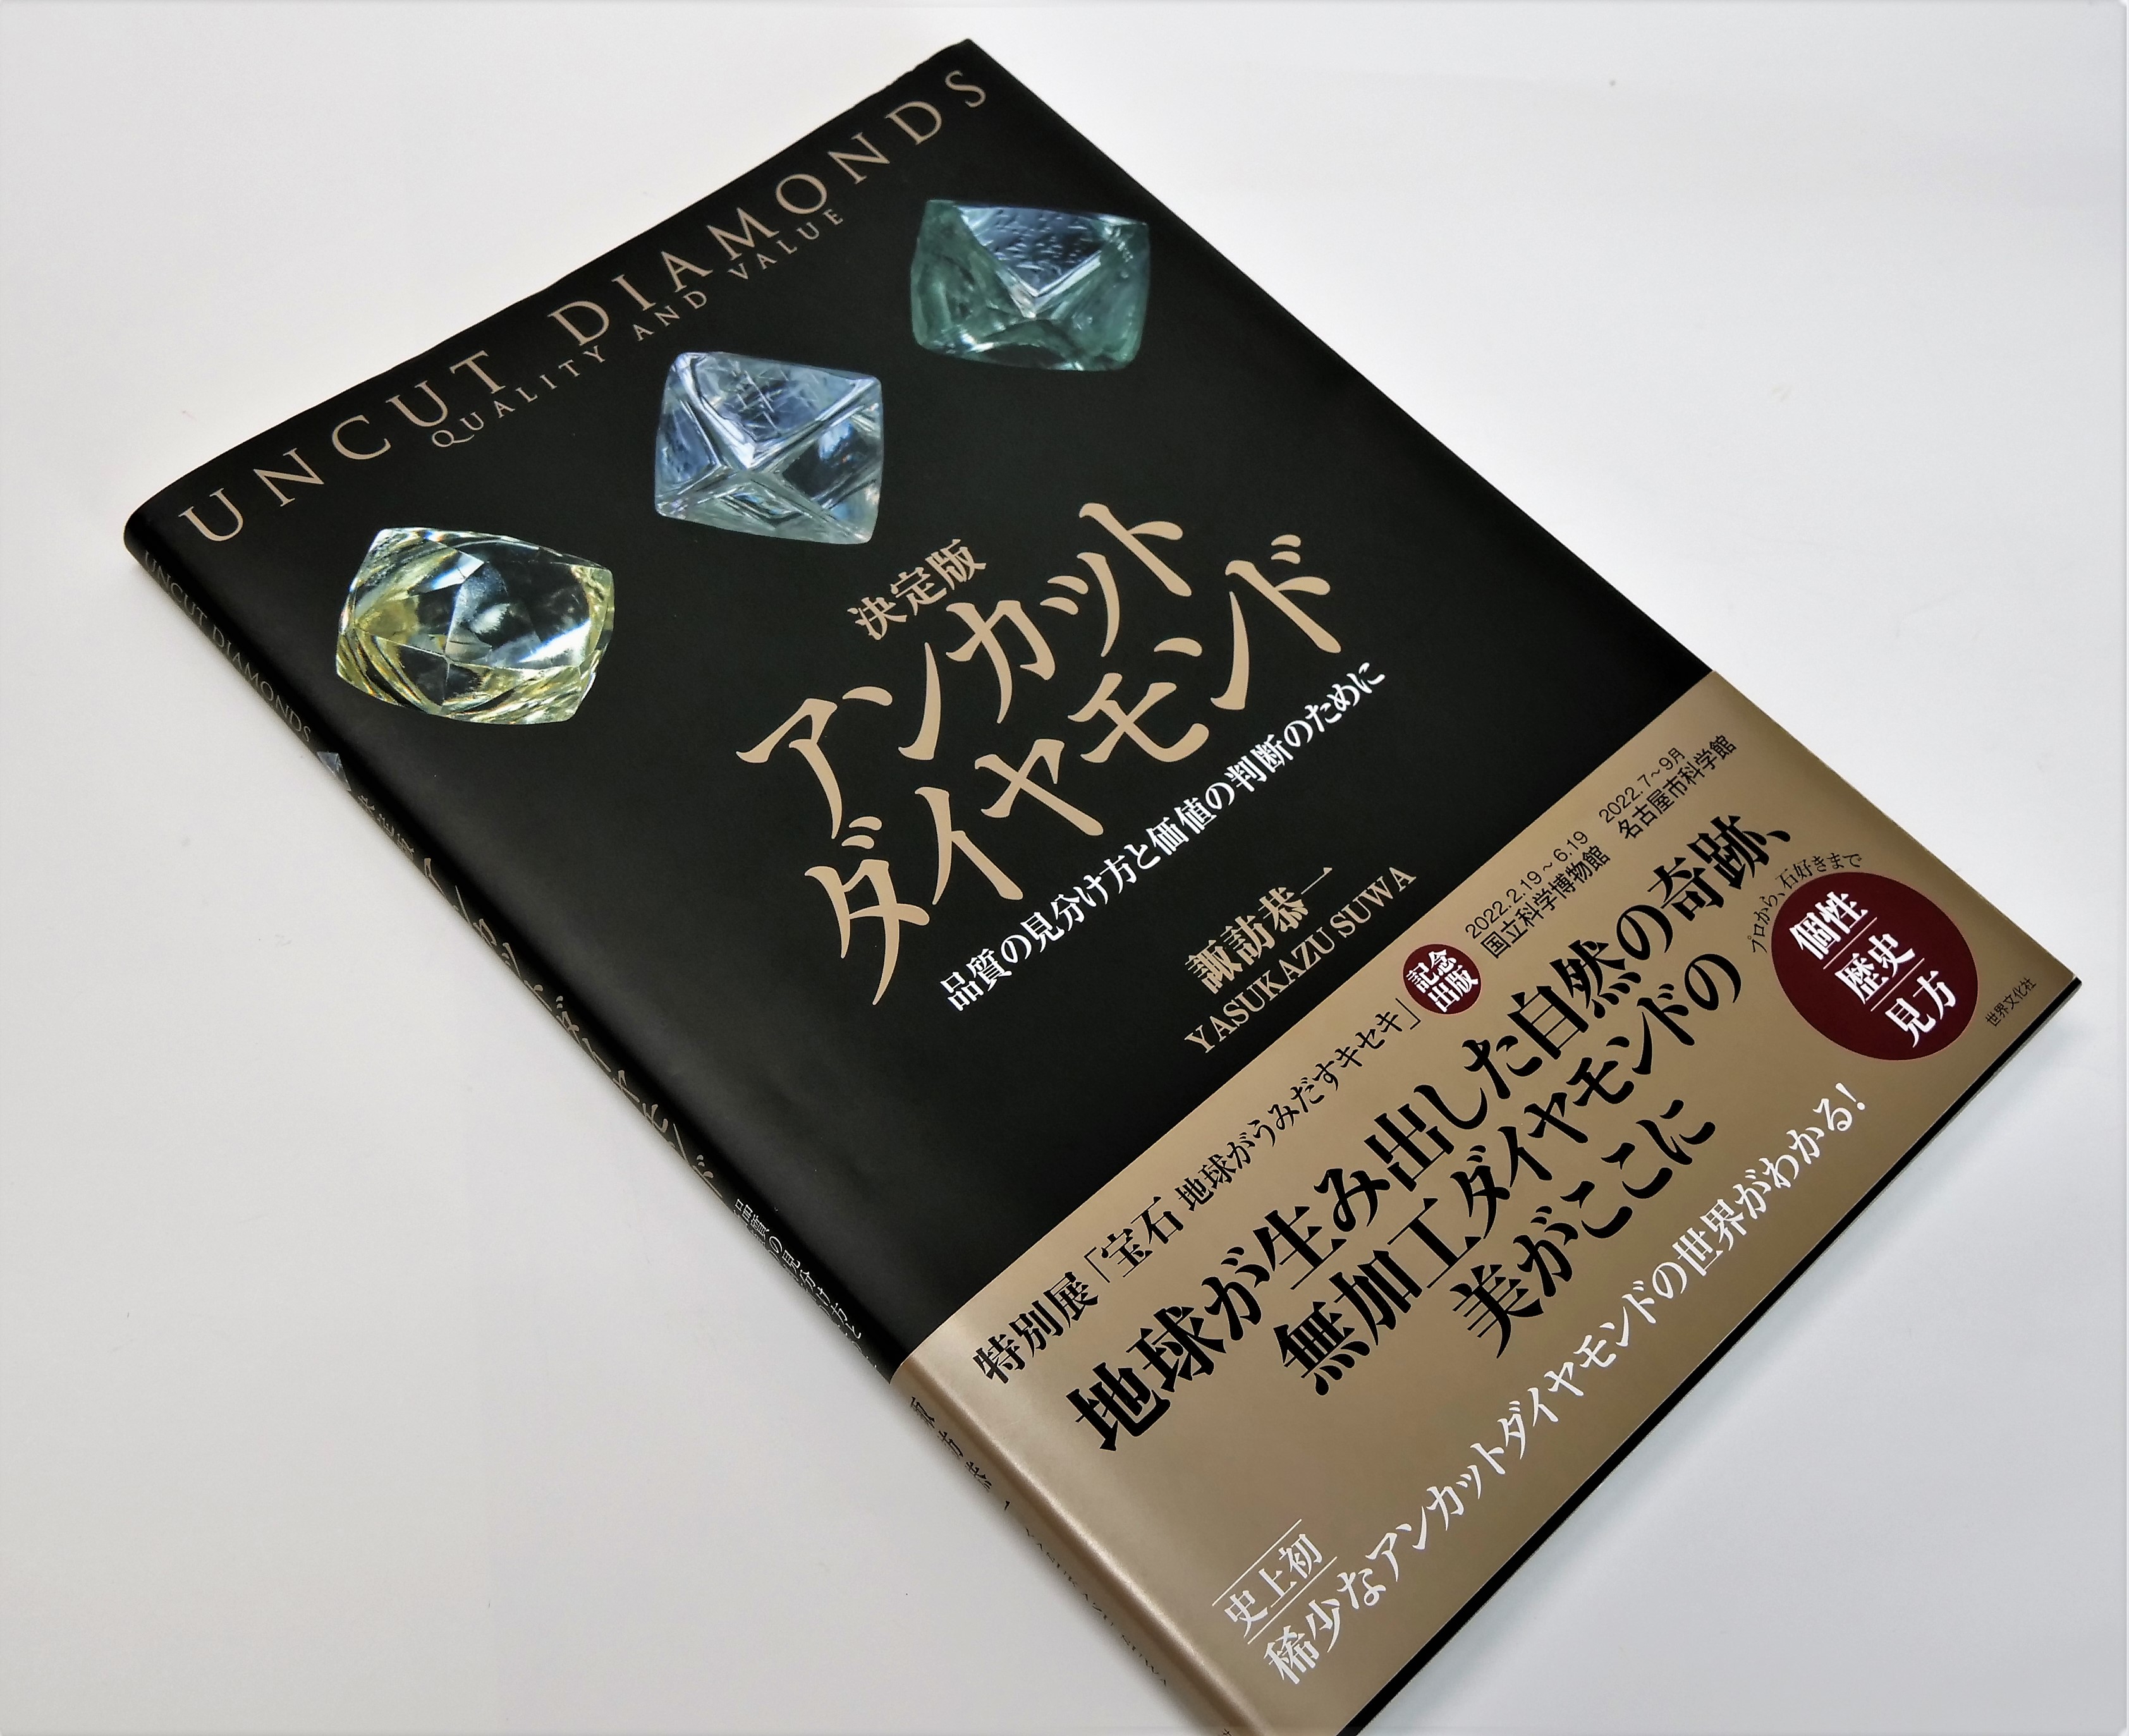 稀少なアンカットダイヤモンドの世界がわかる！UVニス加工でダイヤモンドの隆起を表現。  東京印書館   写真集・展覧会図録・絵本・その他印刷物の企画制作 TOKYO INSHOKAN PRINTING CO.,LTD.